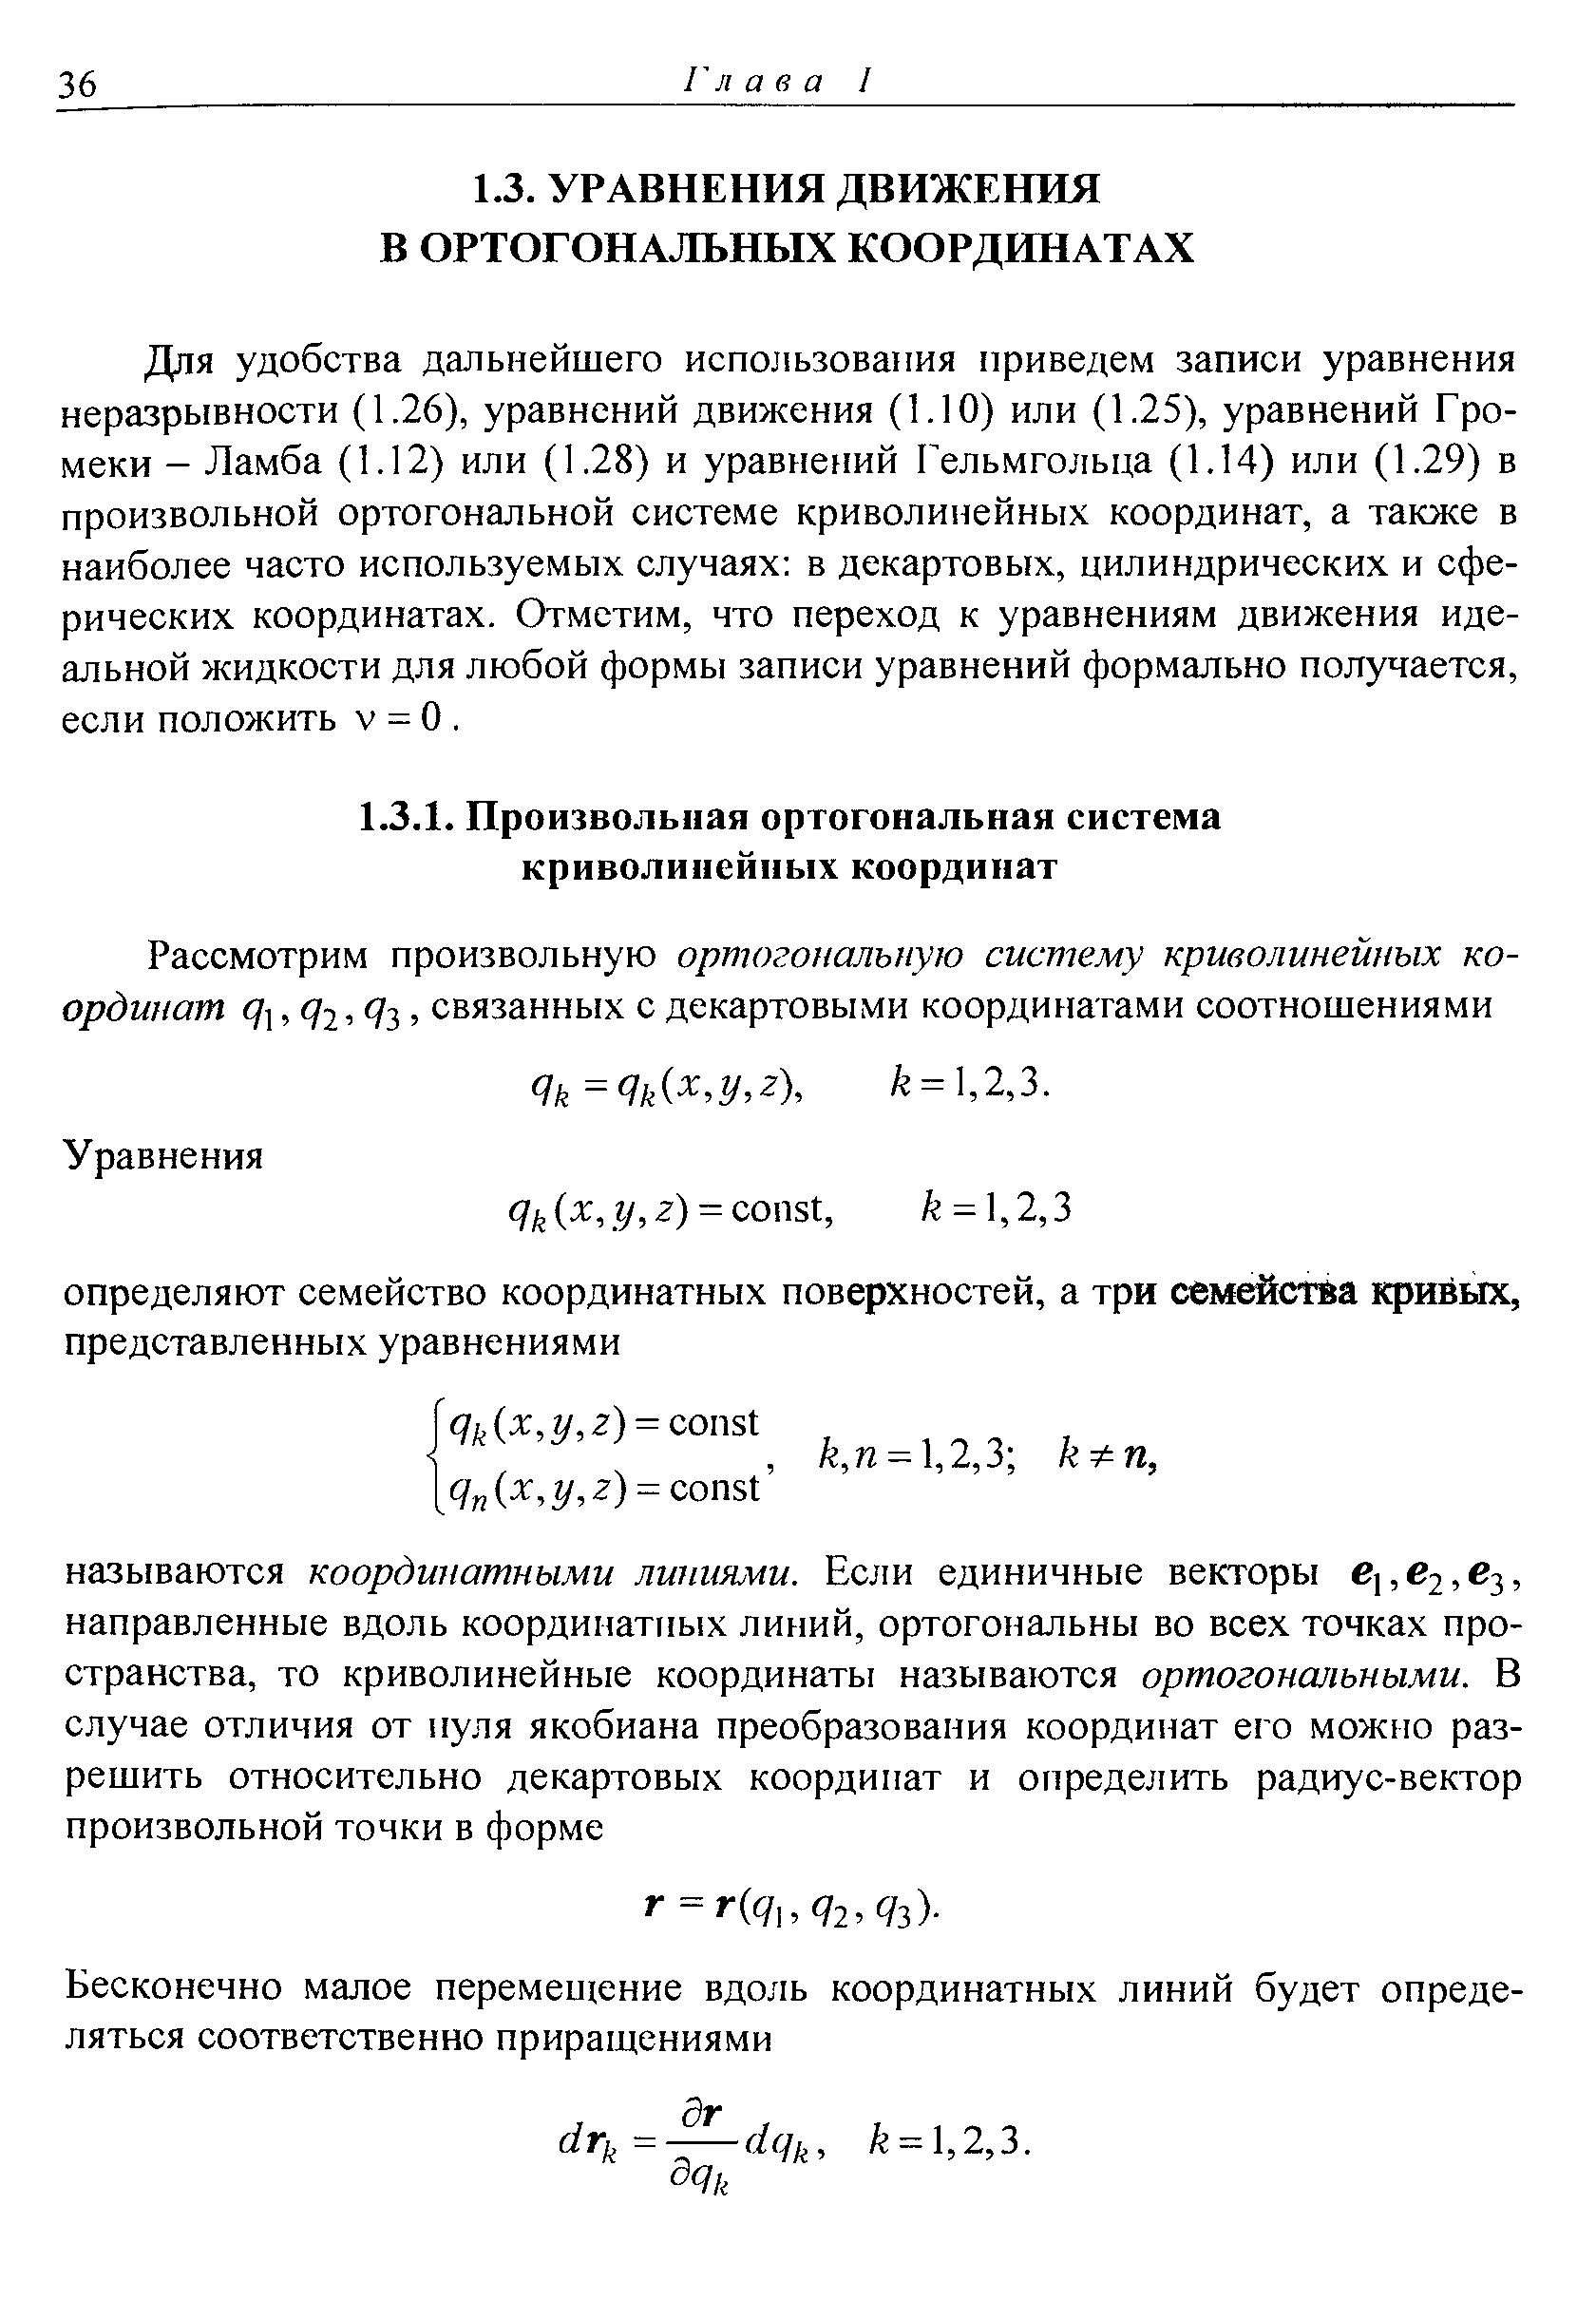 Для удобства дальнейшего использования приведем записи уравнения неразрывности (1.26), уравнений движения (1.10) или (1.25), уравнений Громеки - Ламба (1.12) или (1.28) и уравнений Гельмгольца (1.14) или (1.29) в произвольной ортогональной системе криволинейных координат, а также в наиболее часто используемых случаях в декартовых, цилиндрических и сферических координатах. Отметим, что переход к уравнениям движения идеальной жидкости для любой формы записи уравнений формально получается, если положить v = О. 
